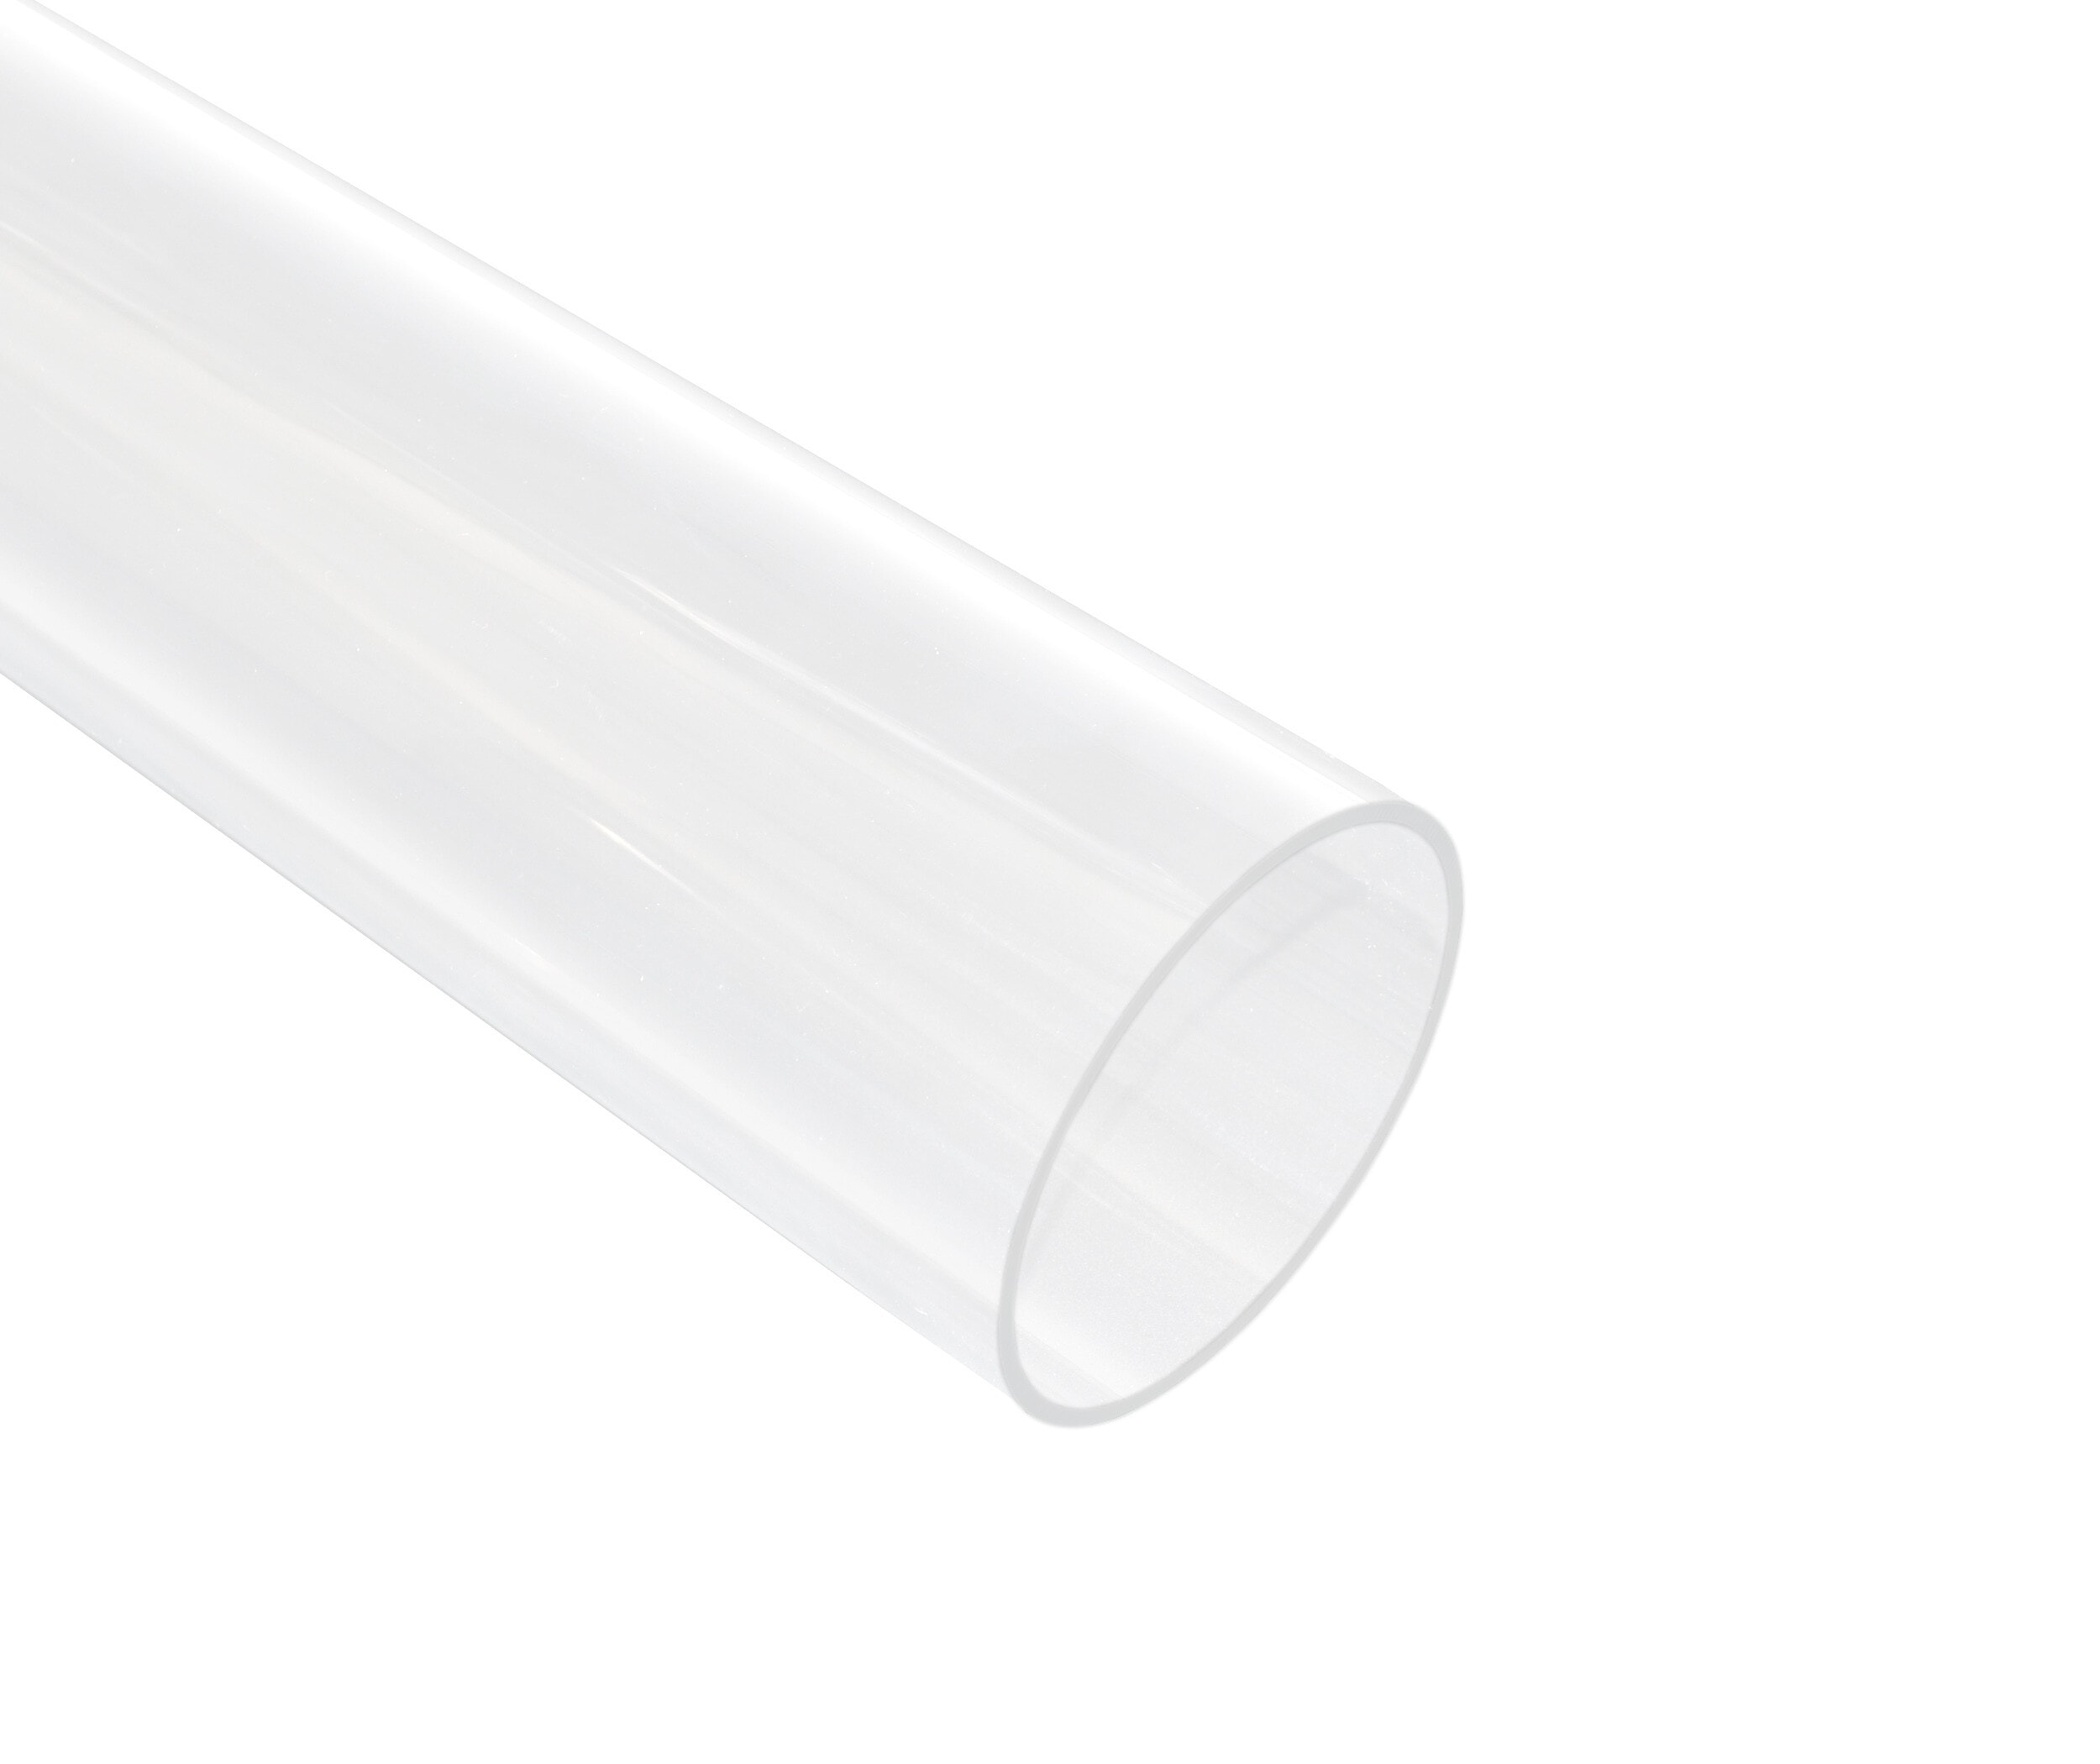 Plaque PVC RIGIDE - TRANSPARENT INCOLORE [ép. 3 x 500 x 500 mm]